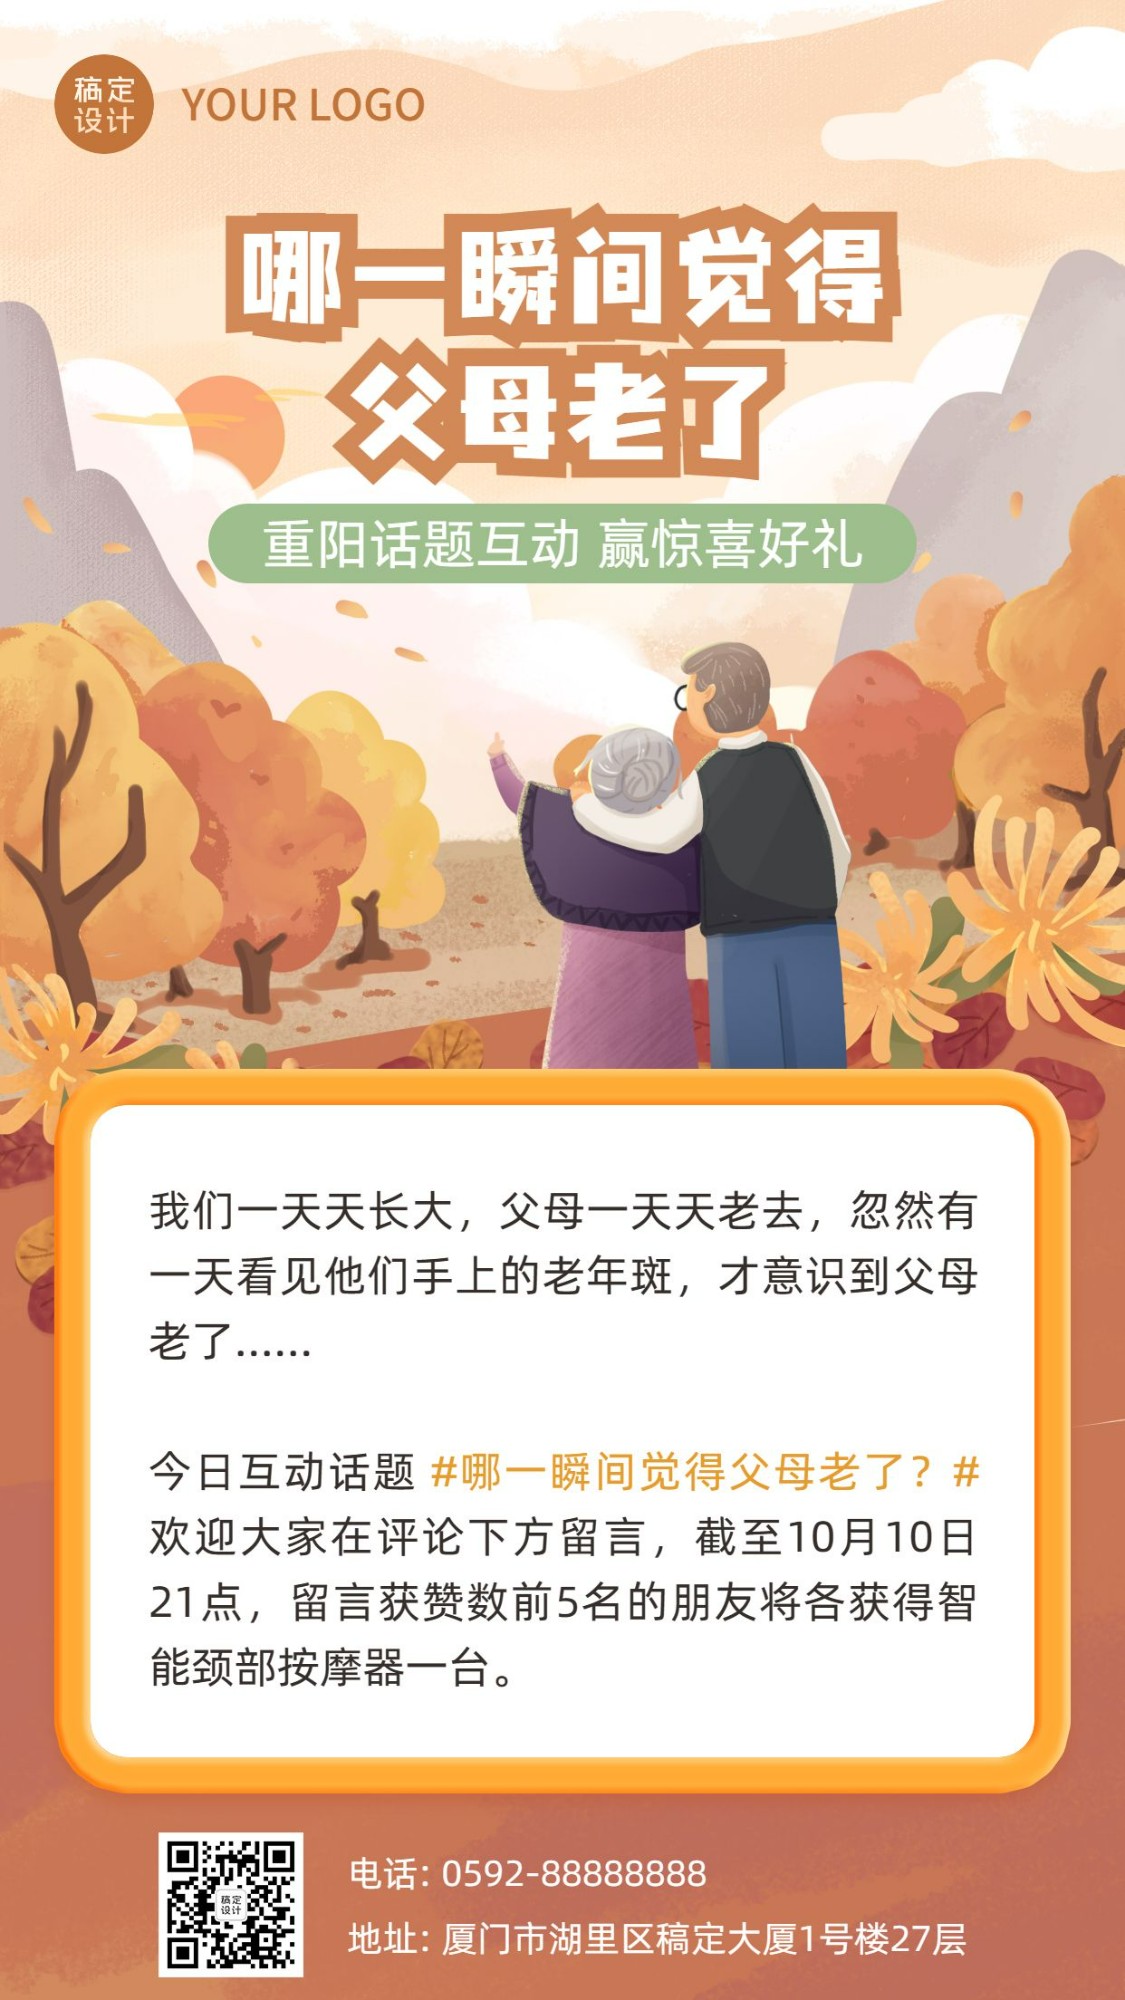 九九重阳话题互动营销插画海报